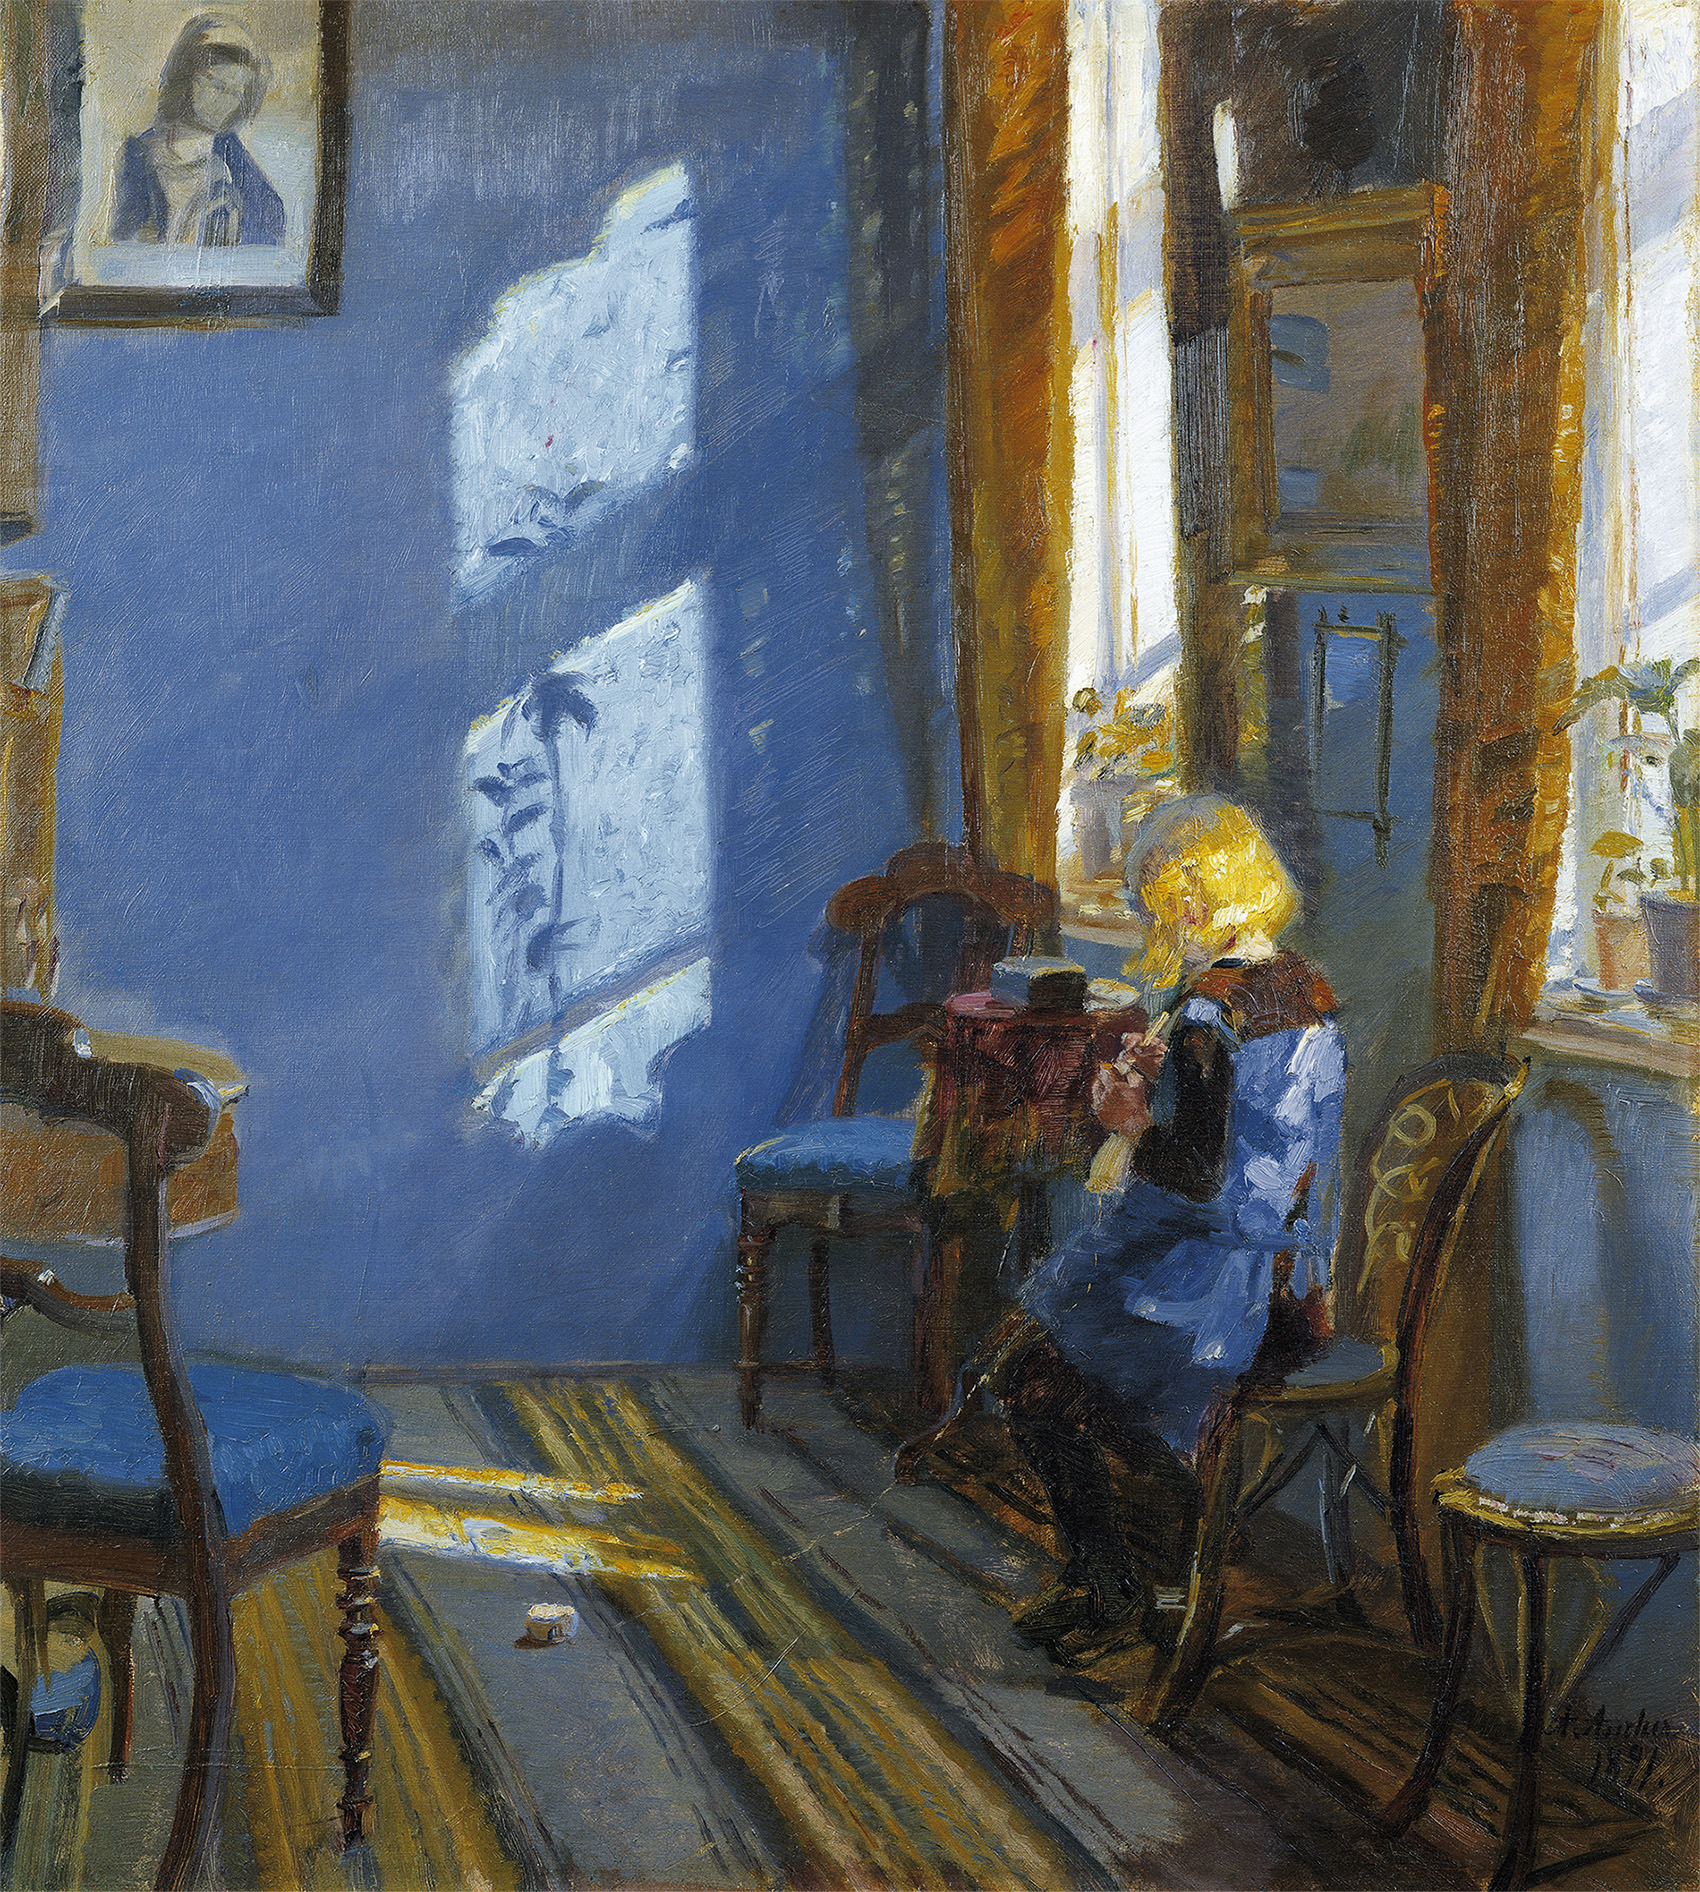 Solljus i det blå rummet by Anna Ancher - 1891 - 65,2 x 58,8 cm 